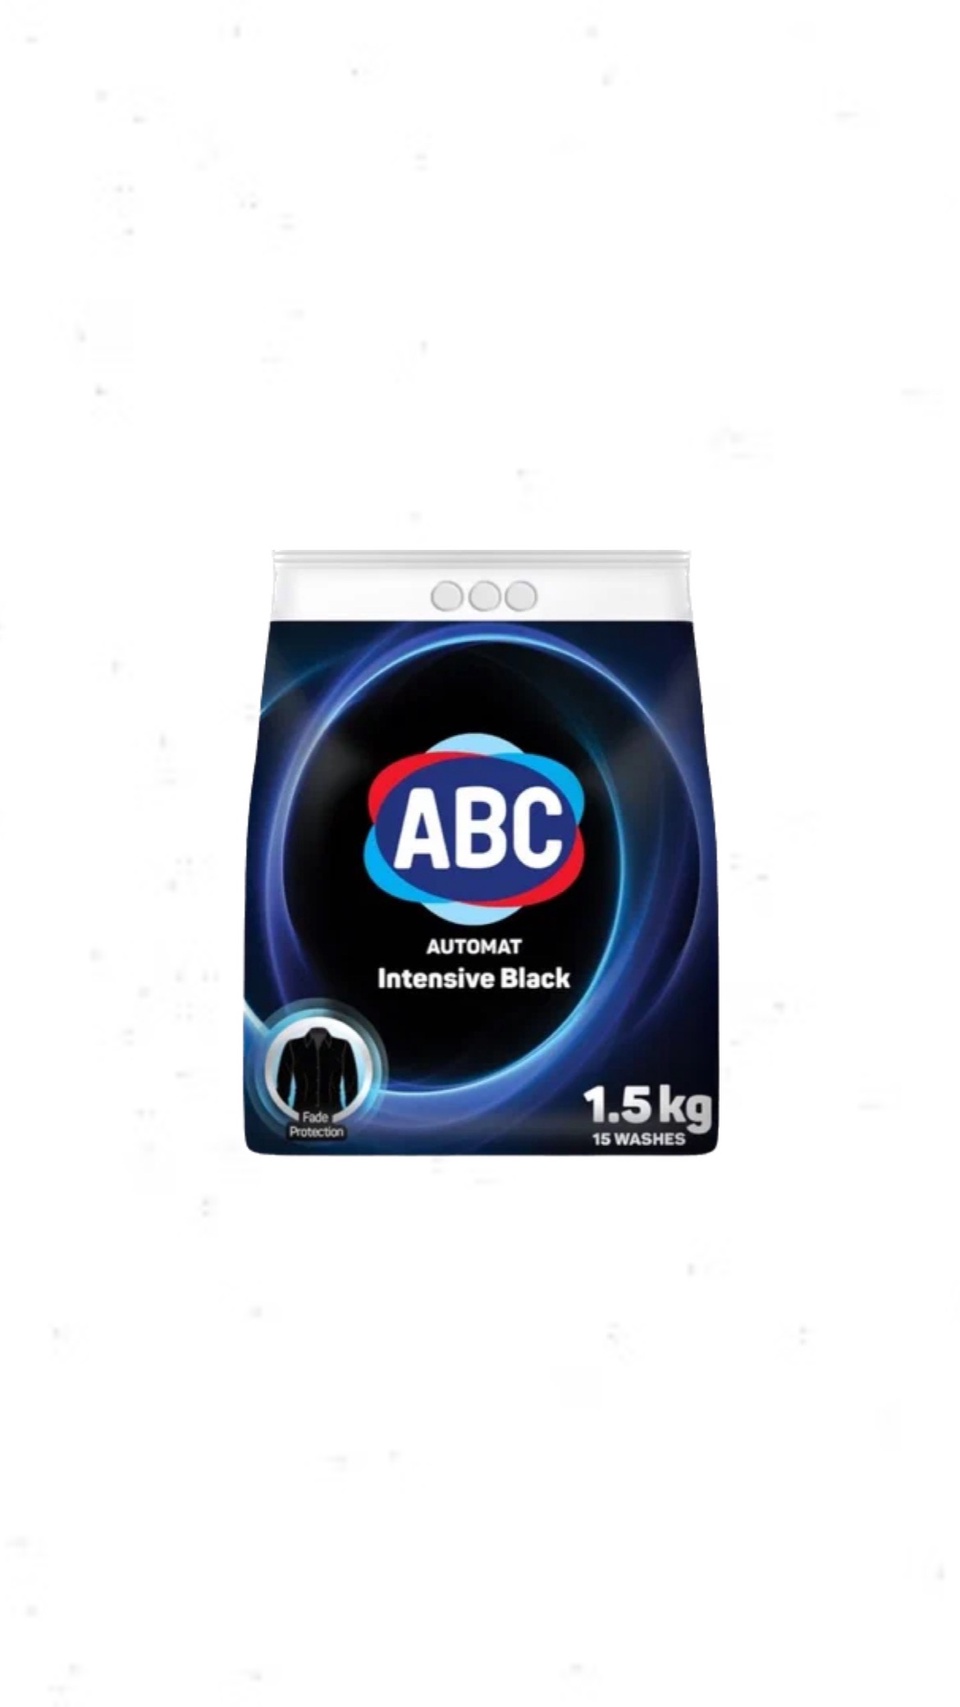 Стиральный порошок ABC Intensive Black Автомат 1,5 кг - 300 ₽, заказать онлайн.